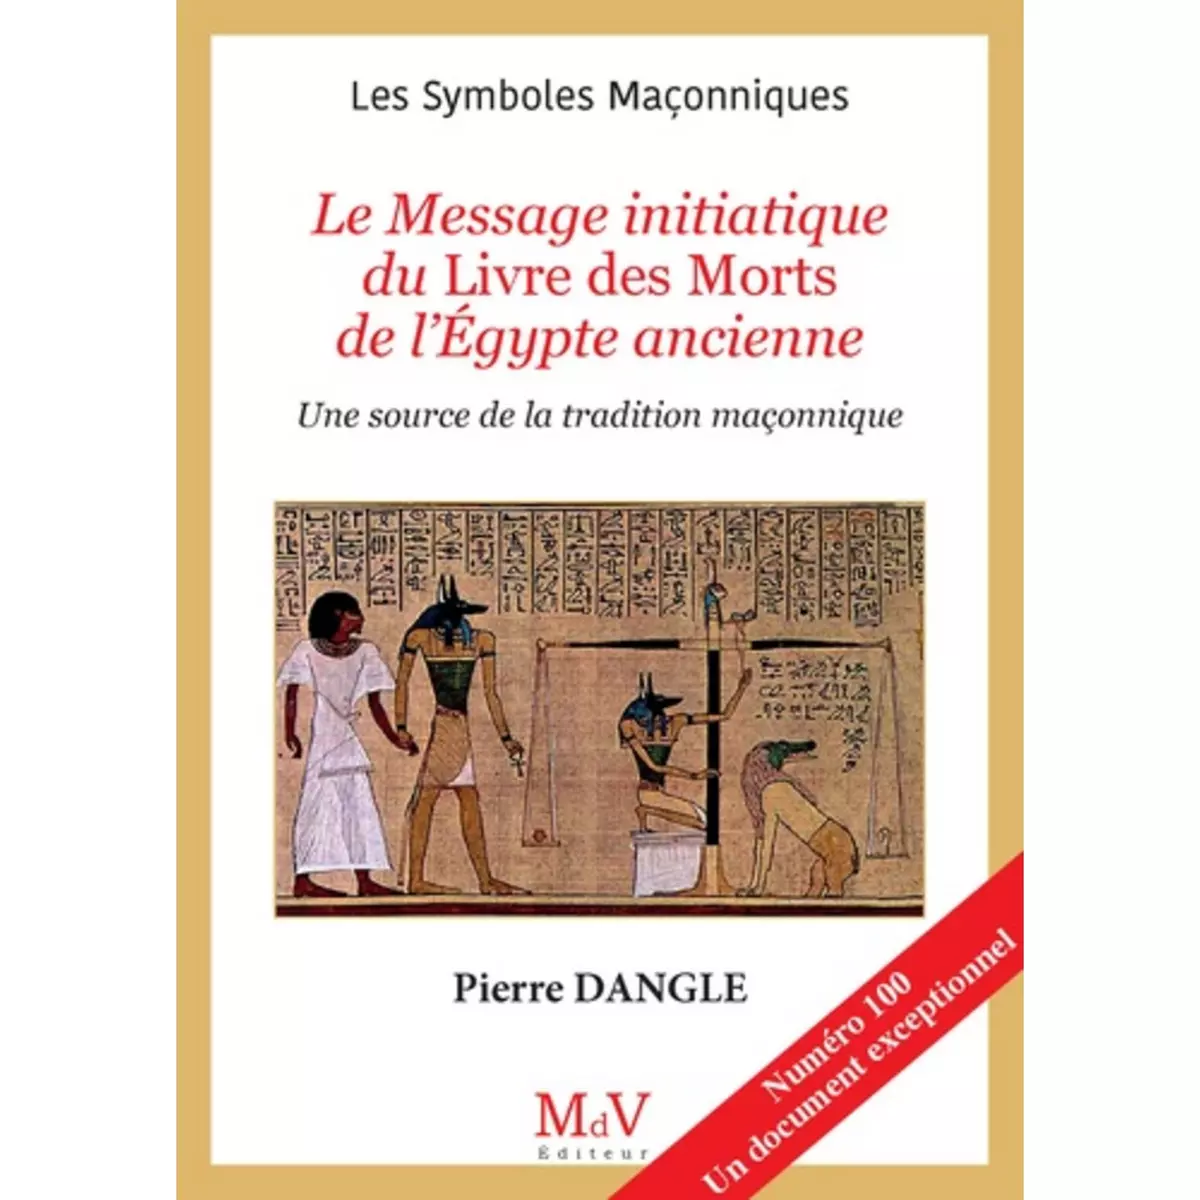  LE MESSAGE INITIATIQUE DU LIVRE DES MORTS DE L'EGYPTE ANCIENNE. UNE SOURCE DE LA TRADITION MACONNIQUE, Dangle Pierre